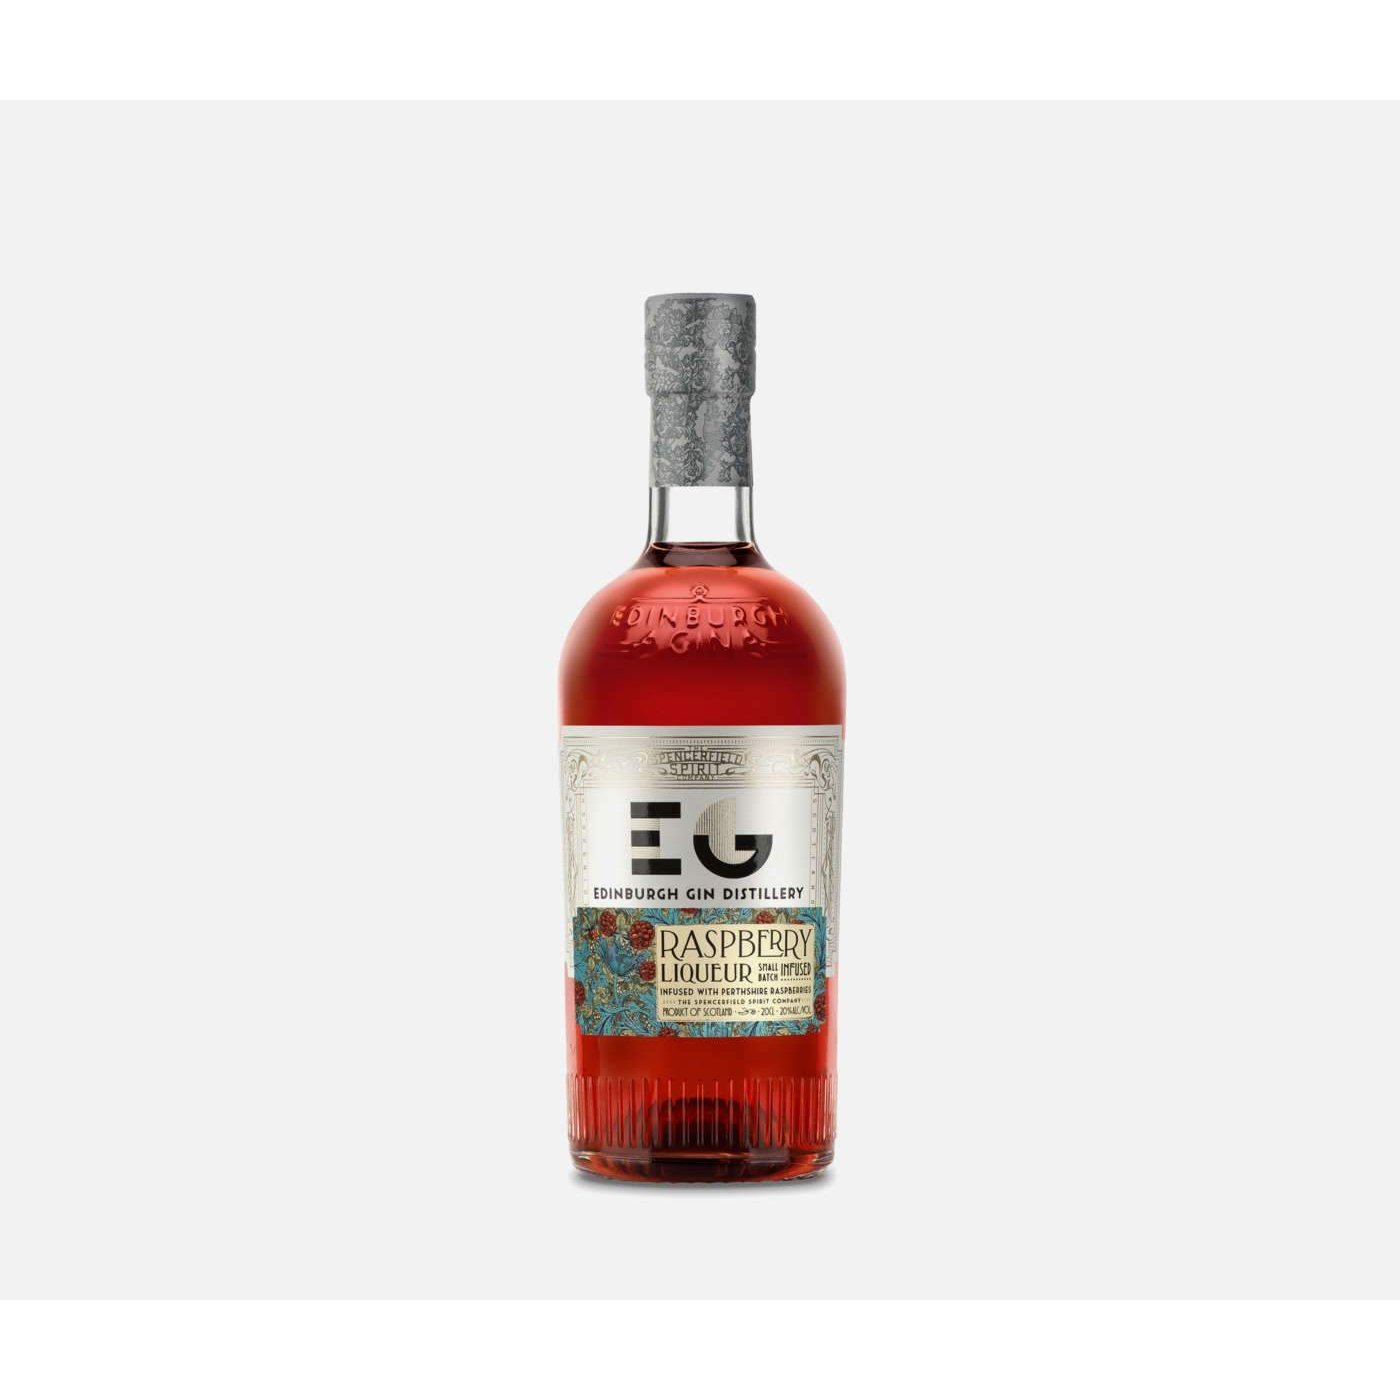 Edinburgh Gin's Raspberry Liqueur 20cl-Gin-5060232070115-Fountainhall Wines